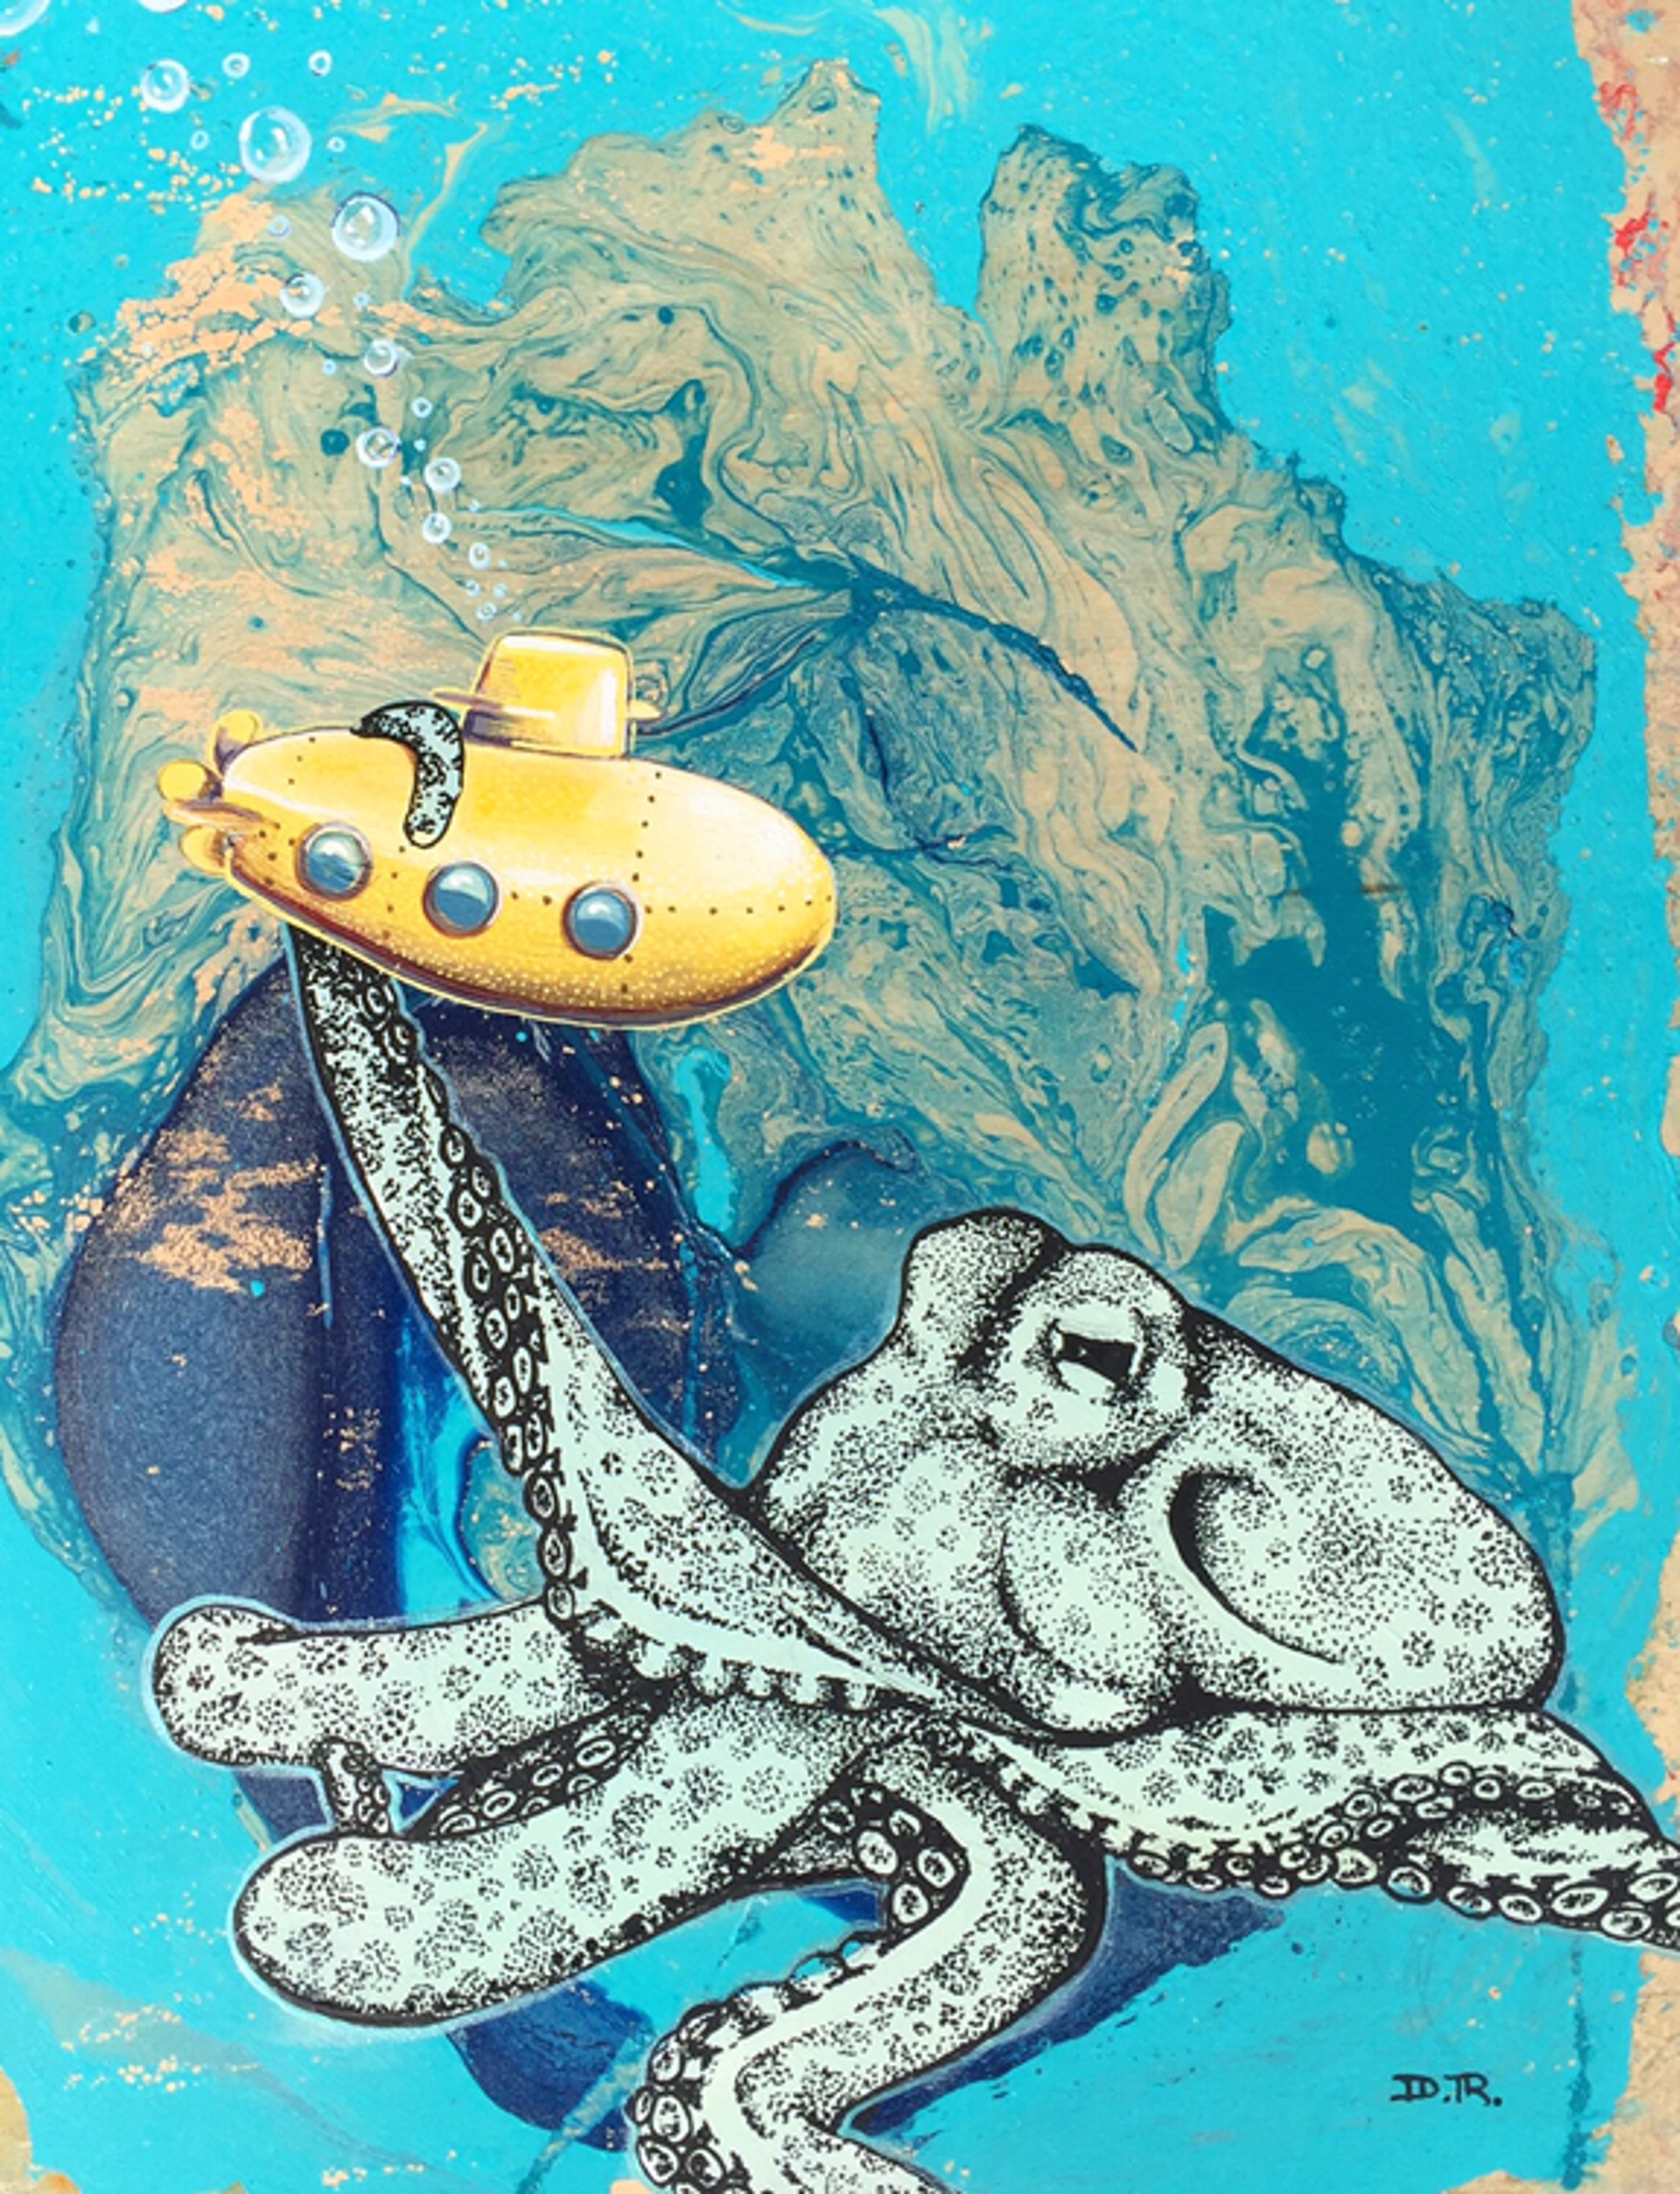 Yellow Submarine Wildlife by Daniel Ryan